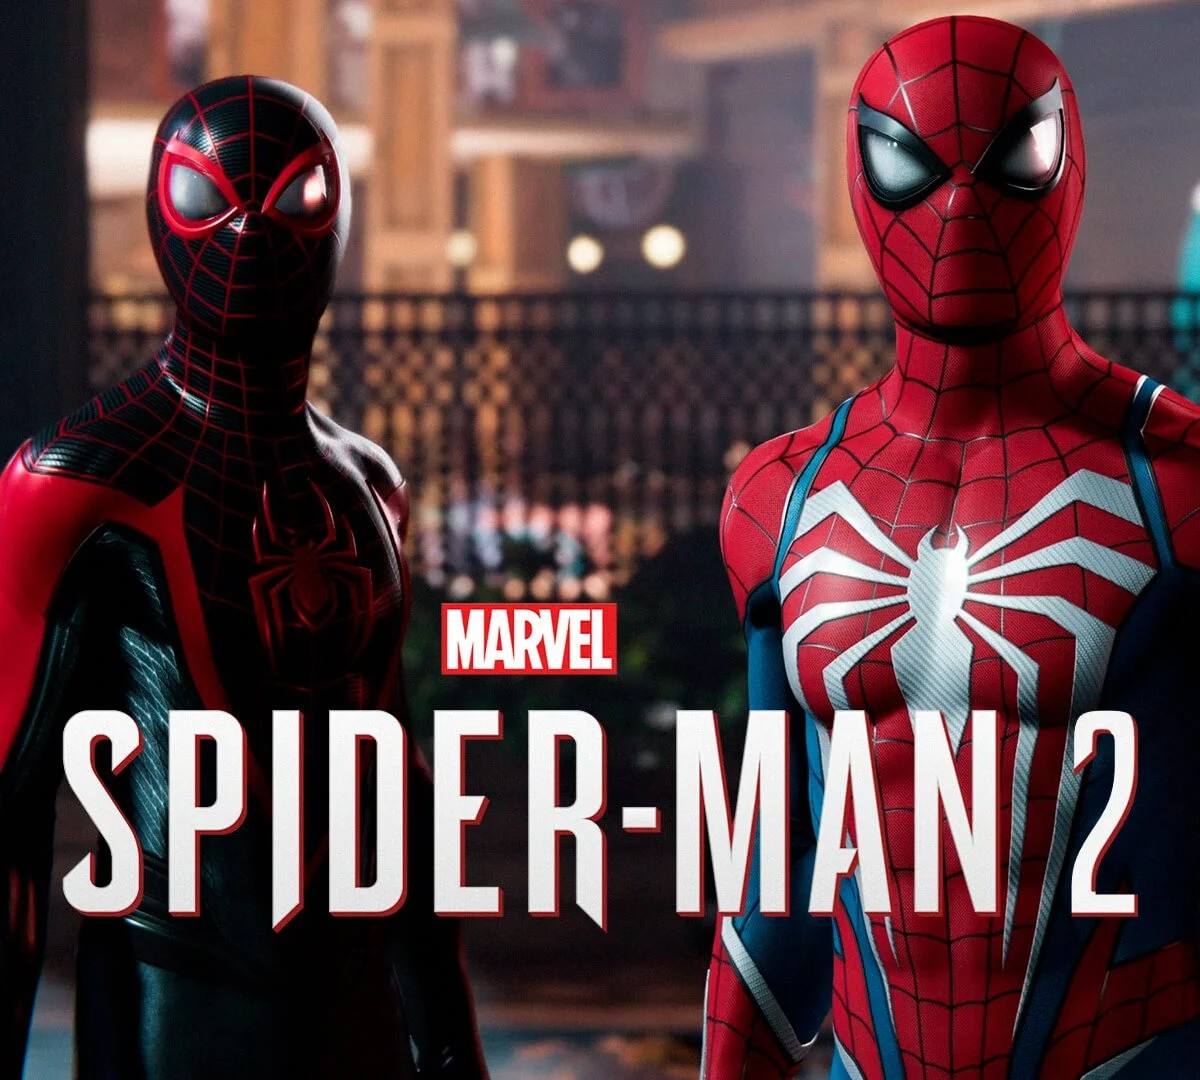 Spider-Man vs Spider-Man 2: veja comparação gráfica entre os jogos -  Adrenaline